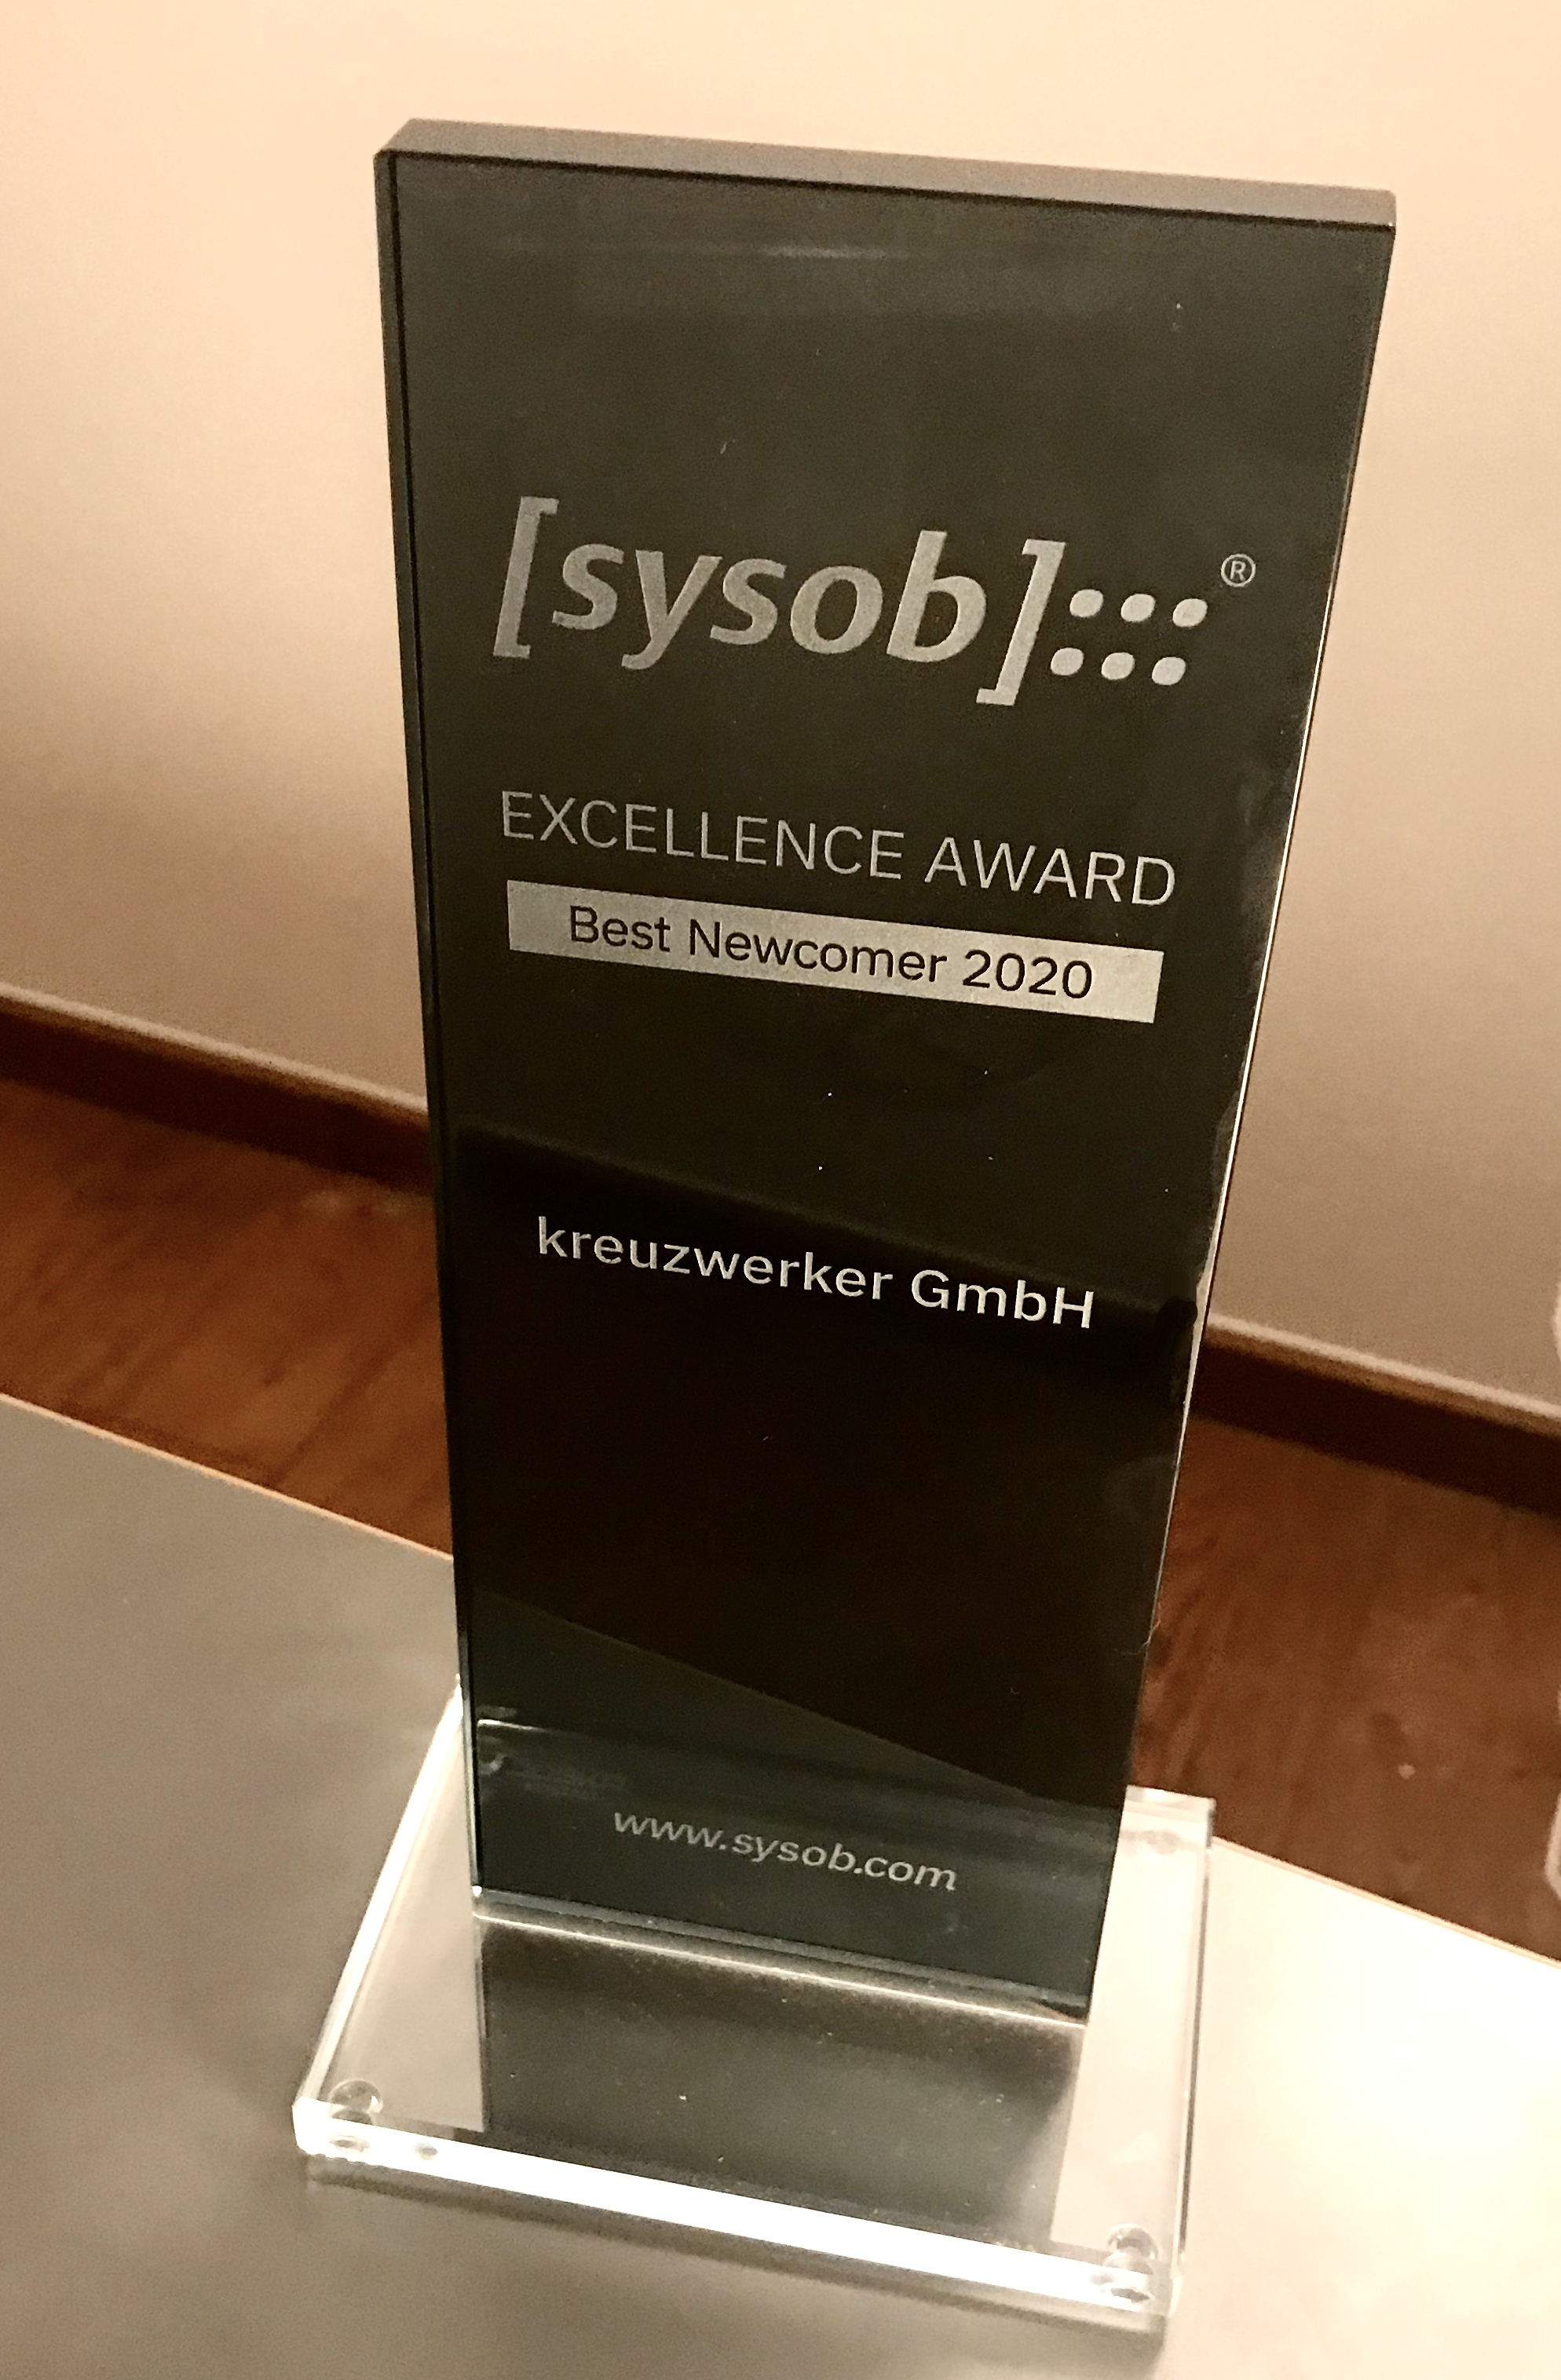 sysob "Best Newcomer 2020": kreuzwerker! Blog post image 1